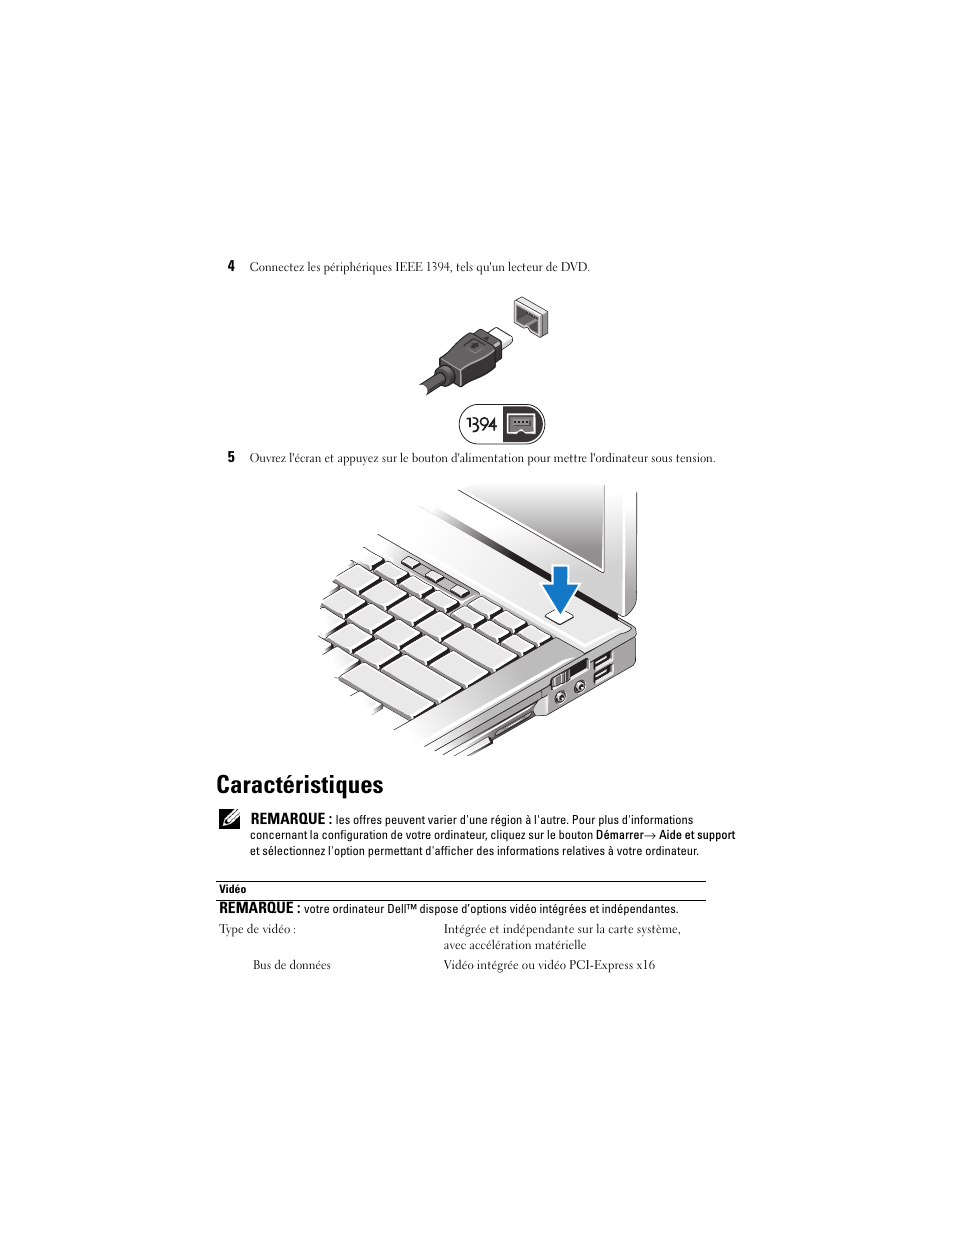 Caractéristiques | Dell Latitude E6400 Manuel d'utilisation | Page 5 / 8